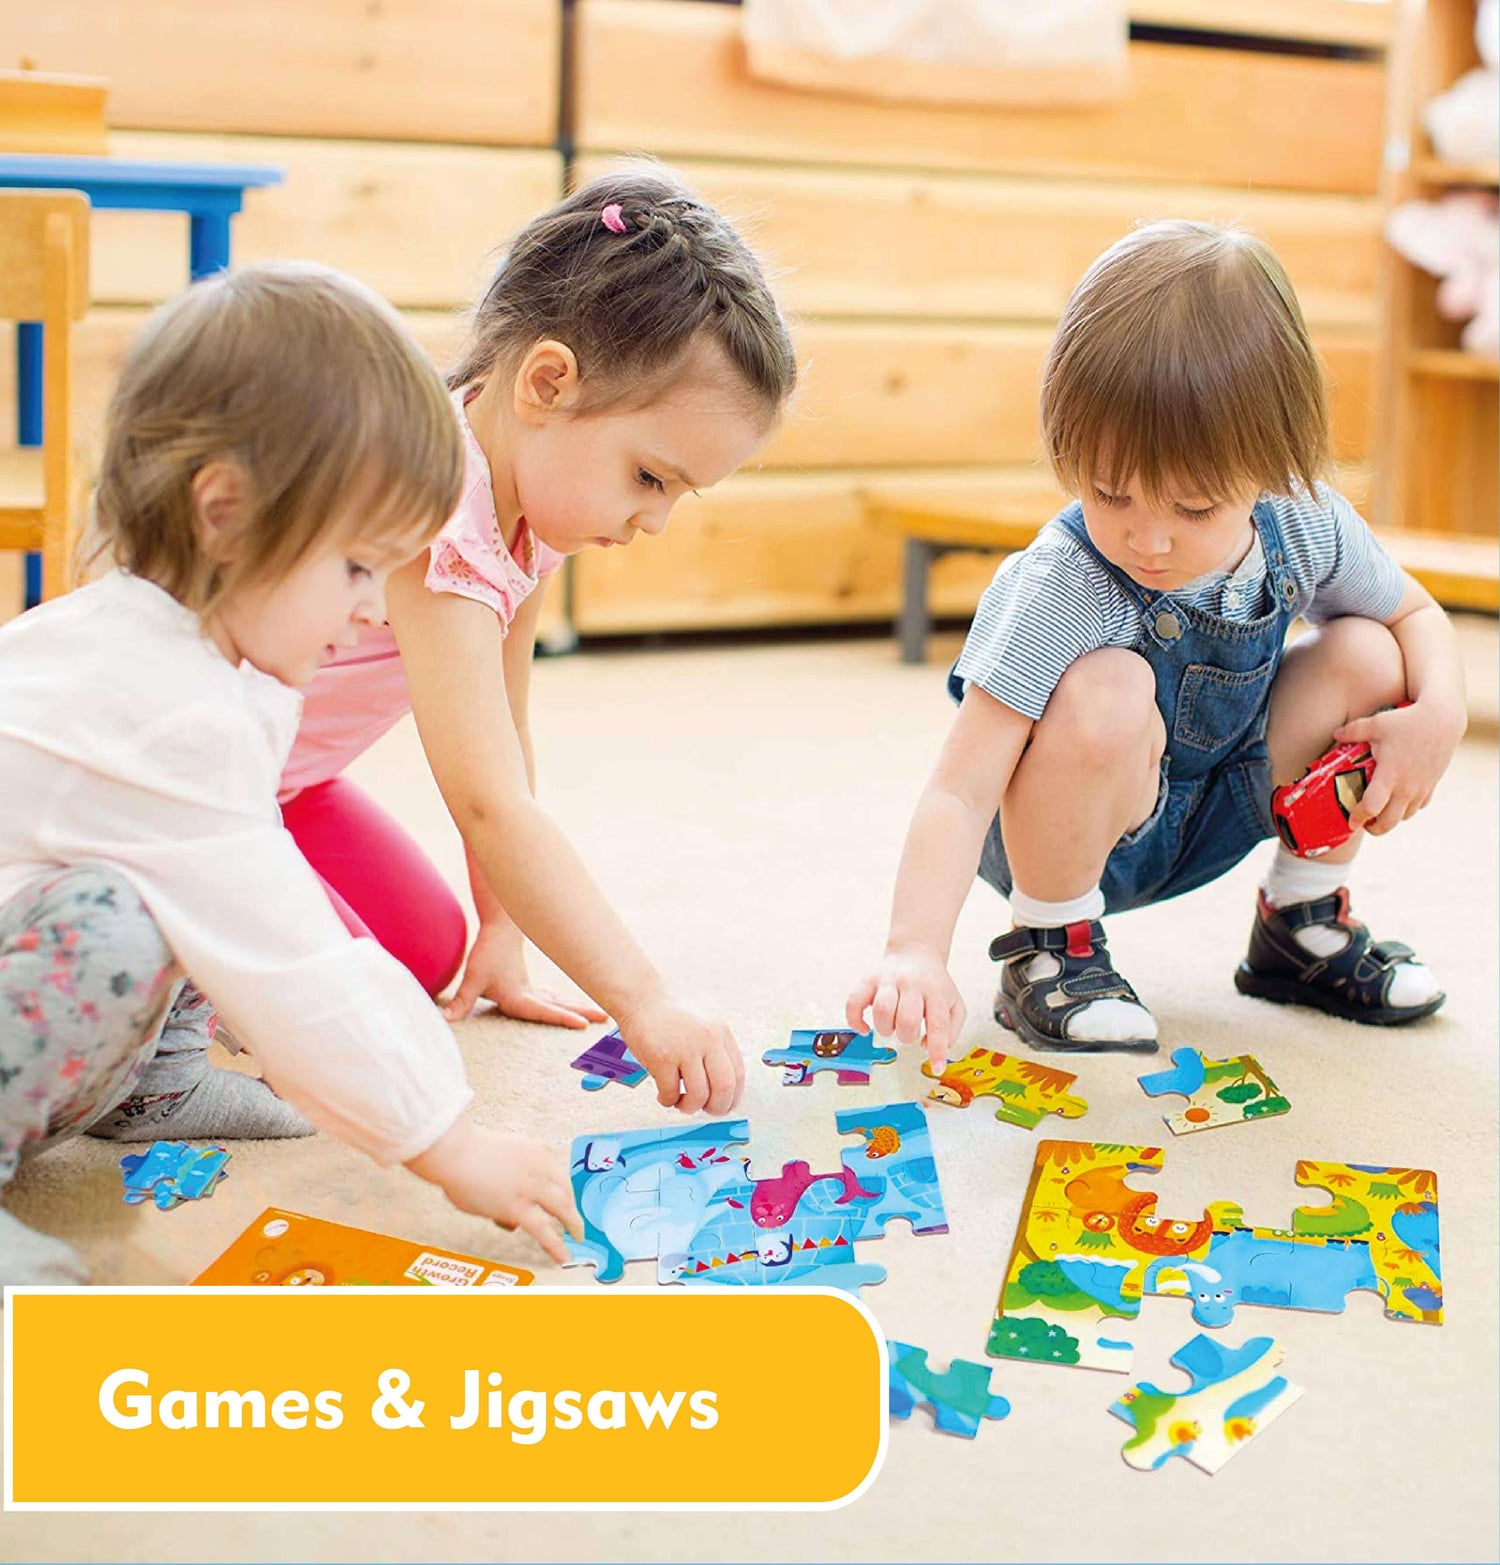 Games & Jigsaws